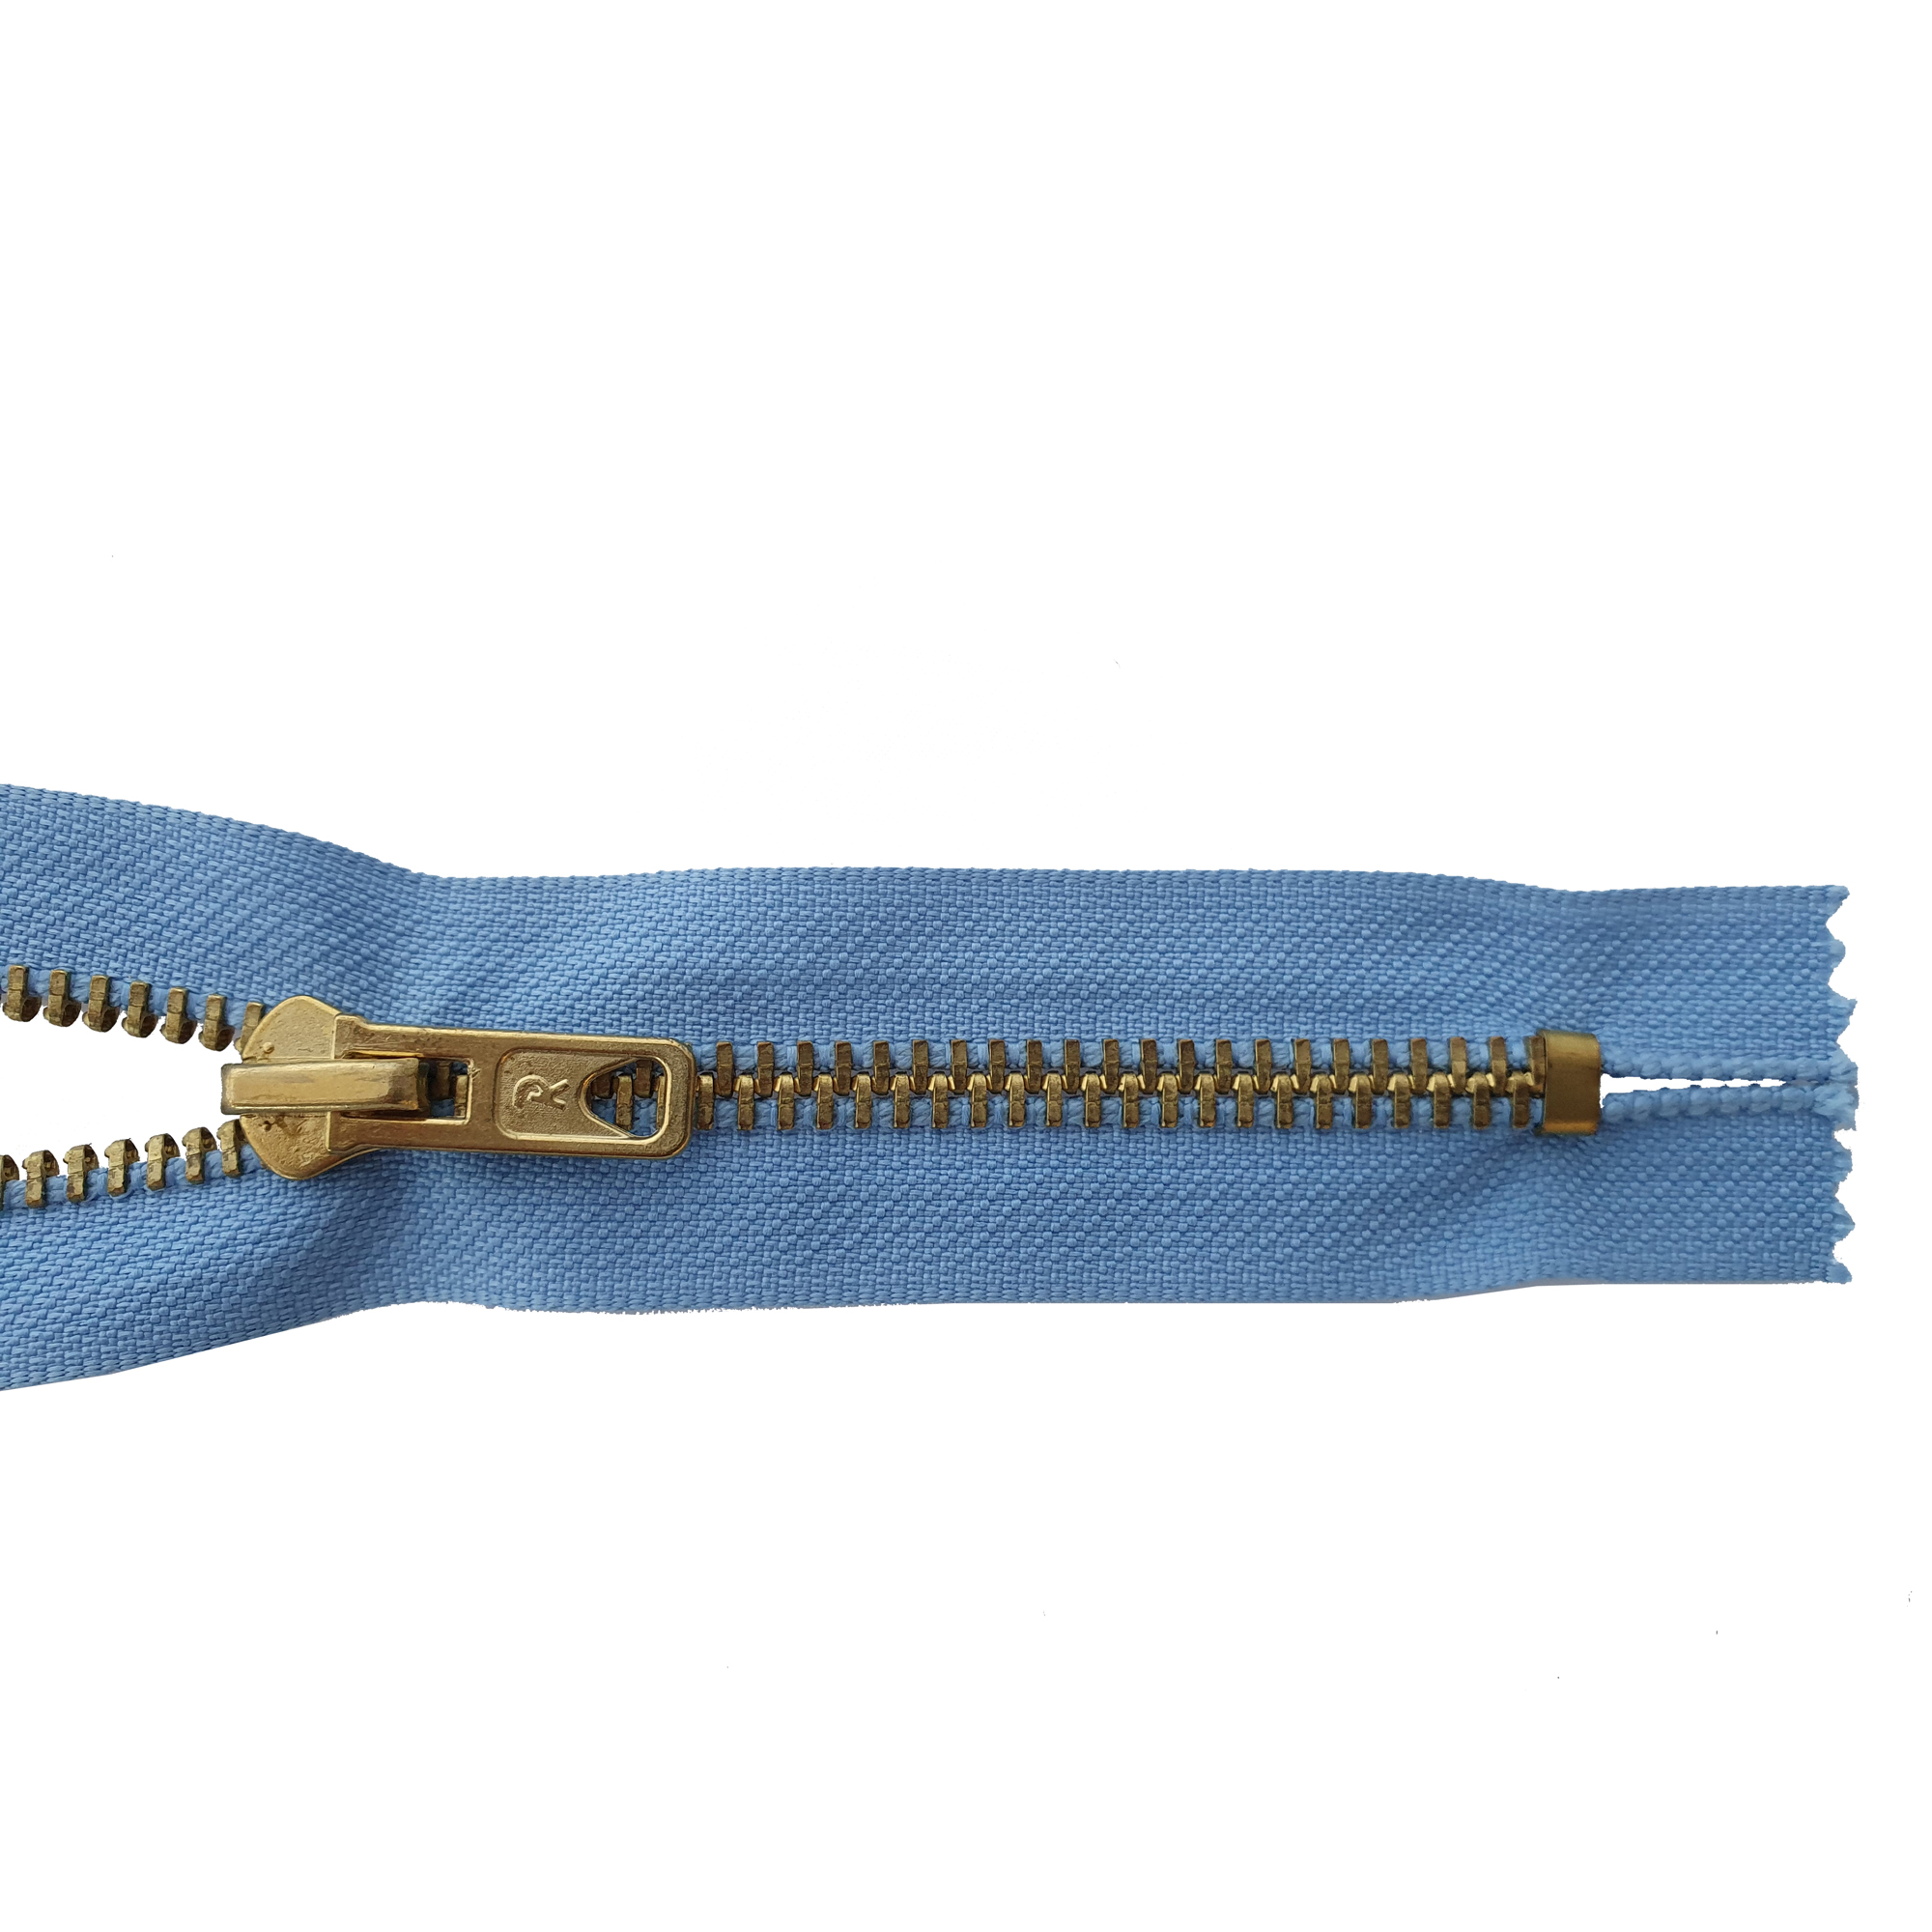 Reißverschluss nicht teilbar, Metall goldf. breit, hell-graublau, hochwertiger Marken-Reißverschluss von Rubi/Barcelona